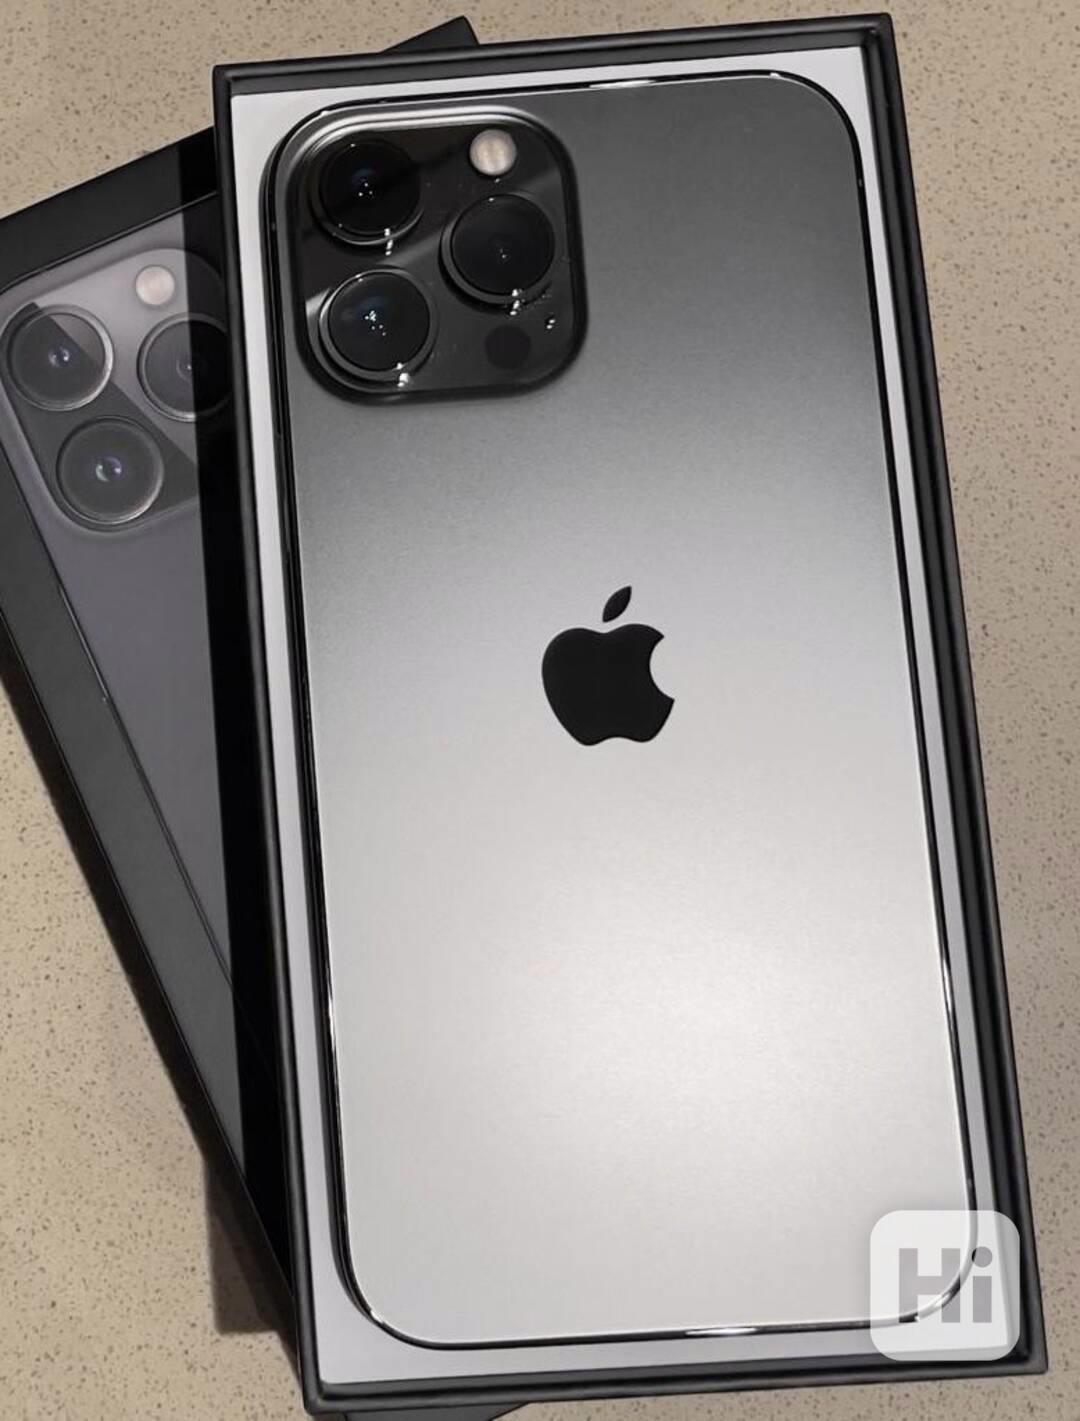 nový Apple iPhone 13 pro - 13 pro MAX - 256GB odblokován - foto 1